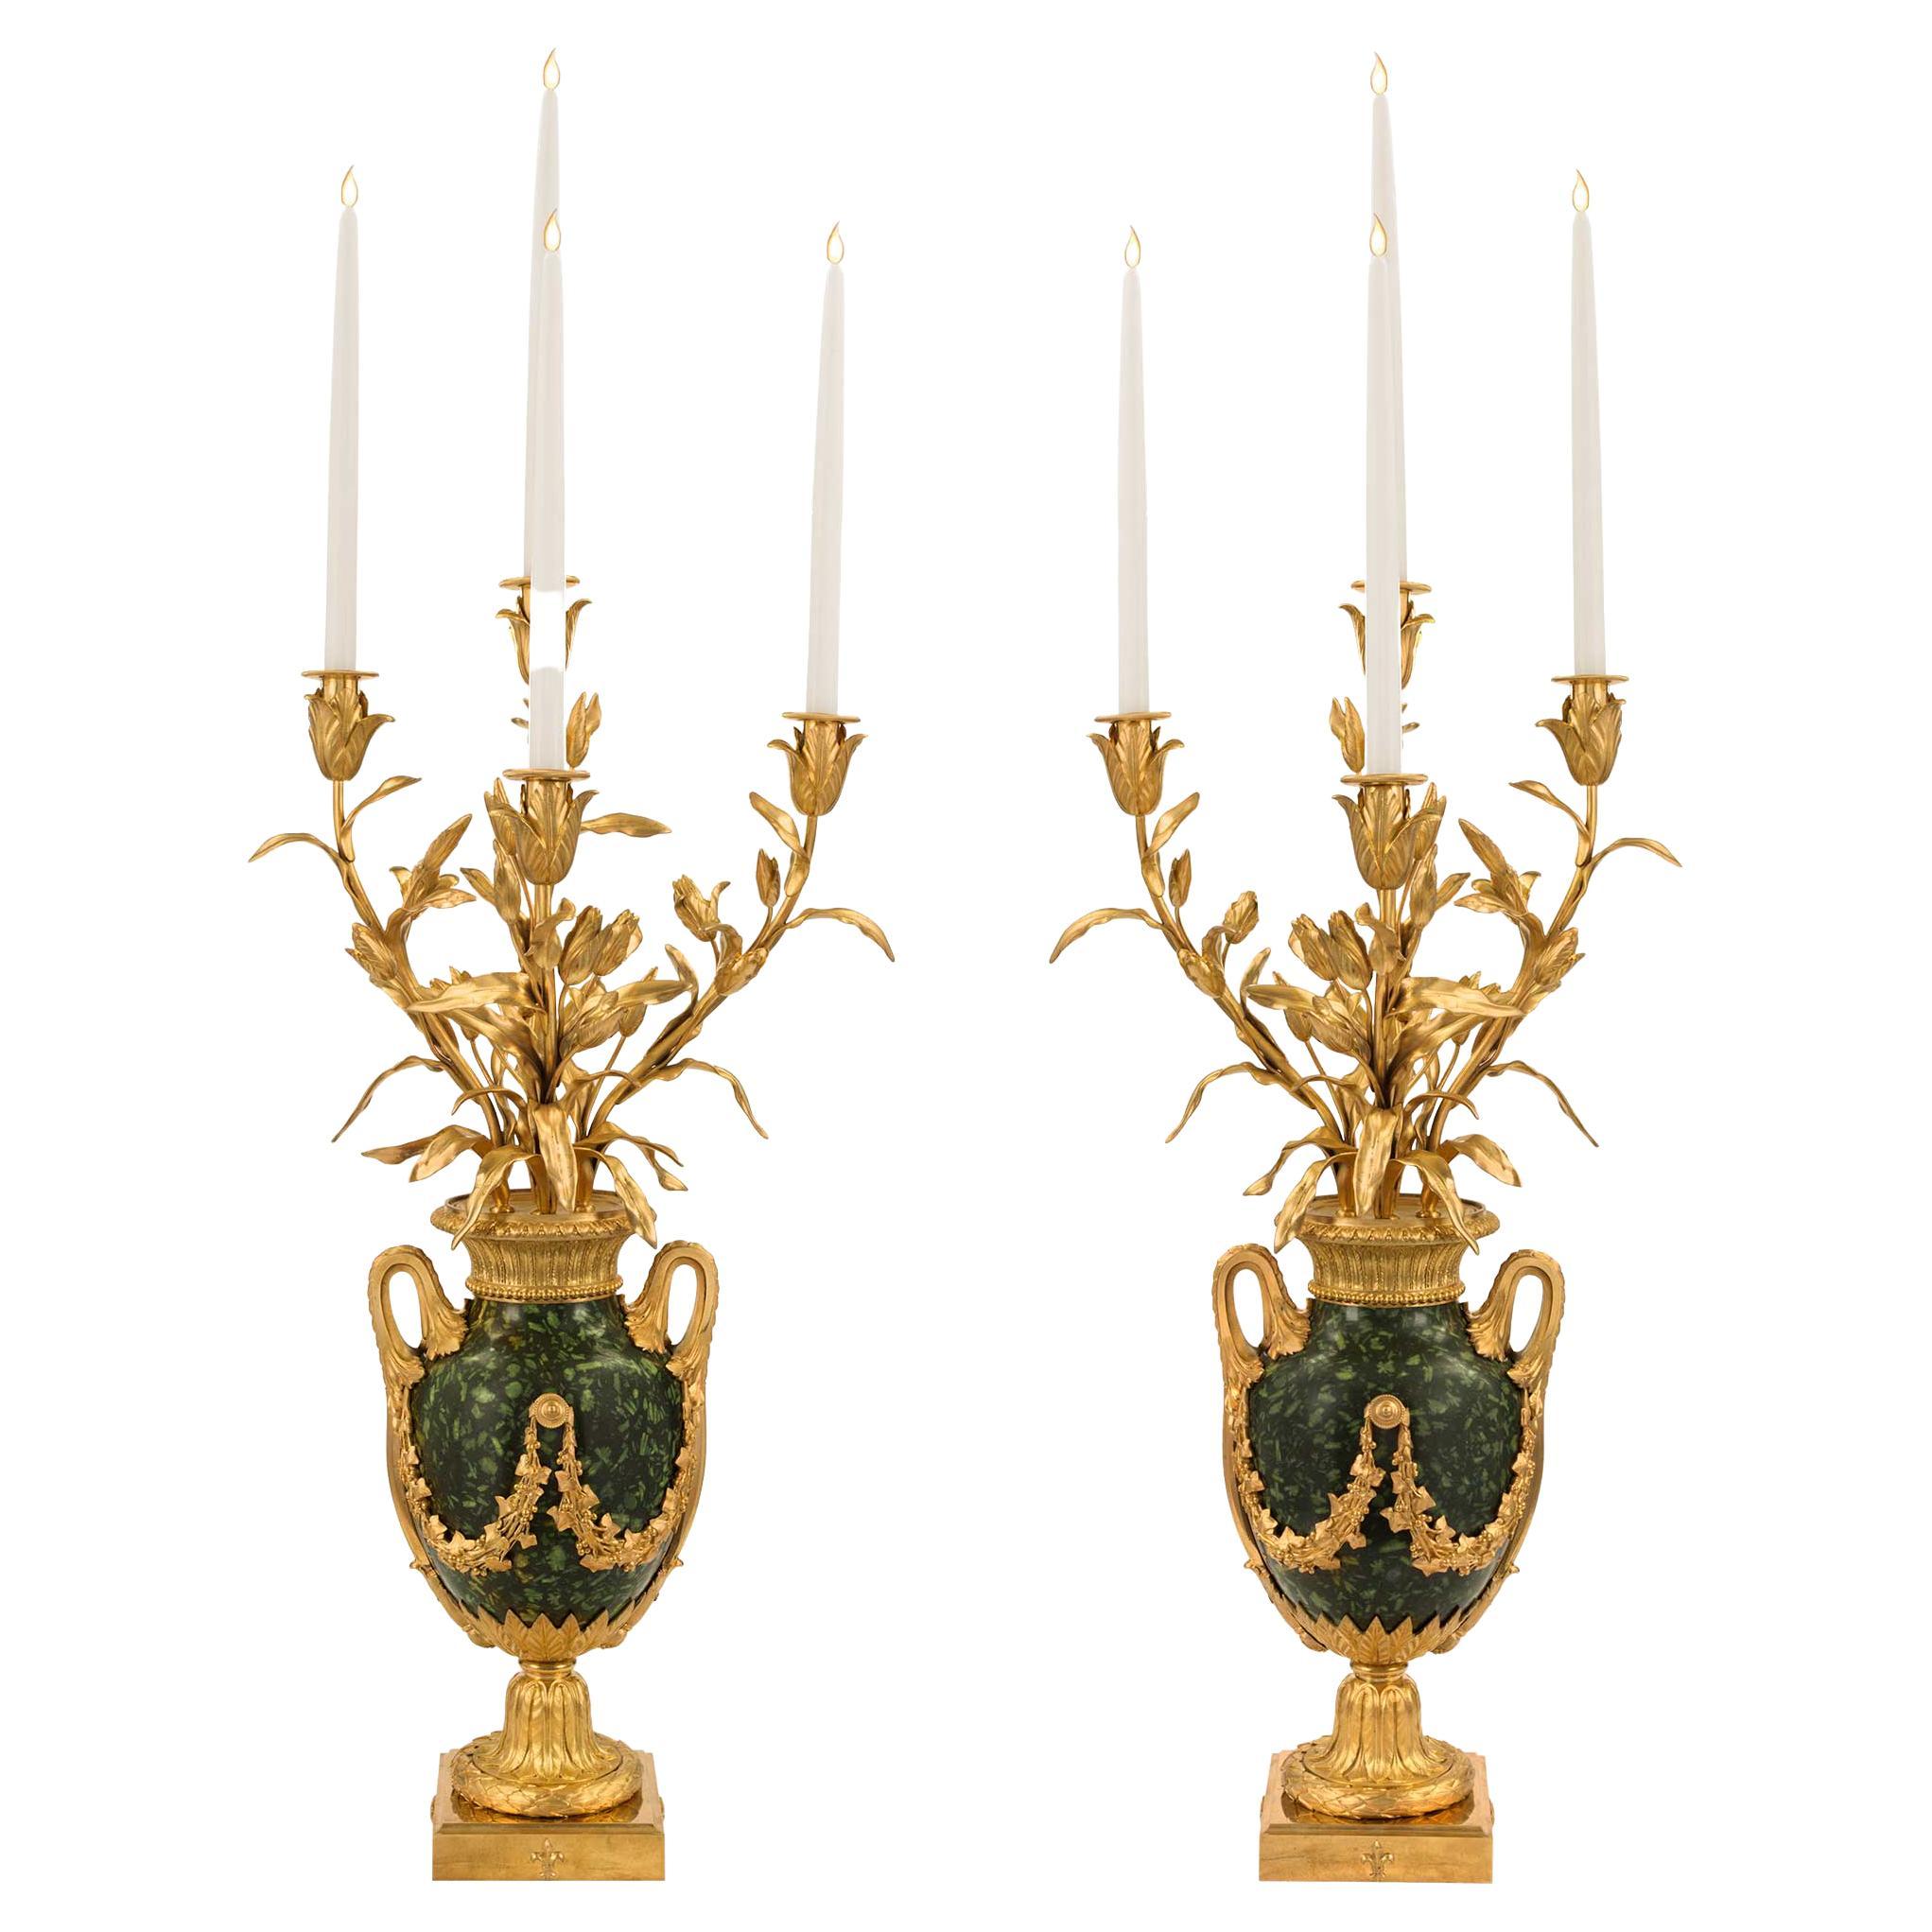 Paire de candélabres à quatre bras de style Louis XVI du XIXe siècle